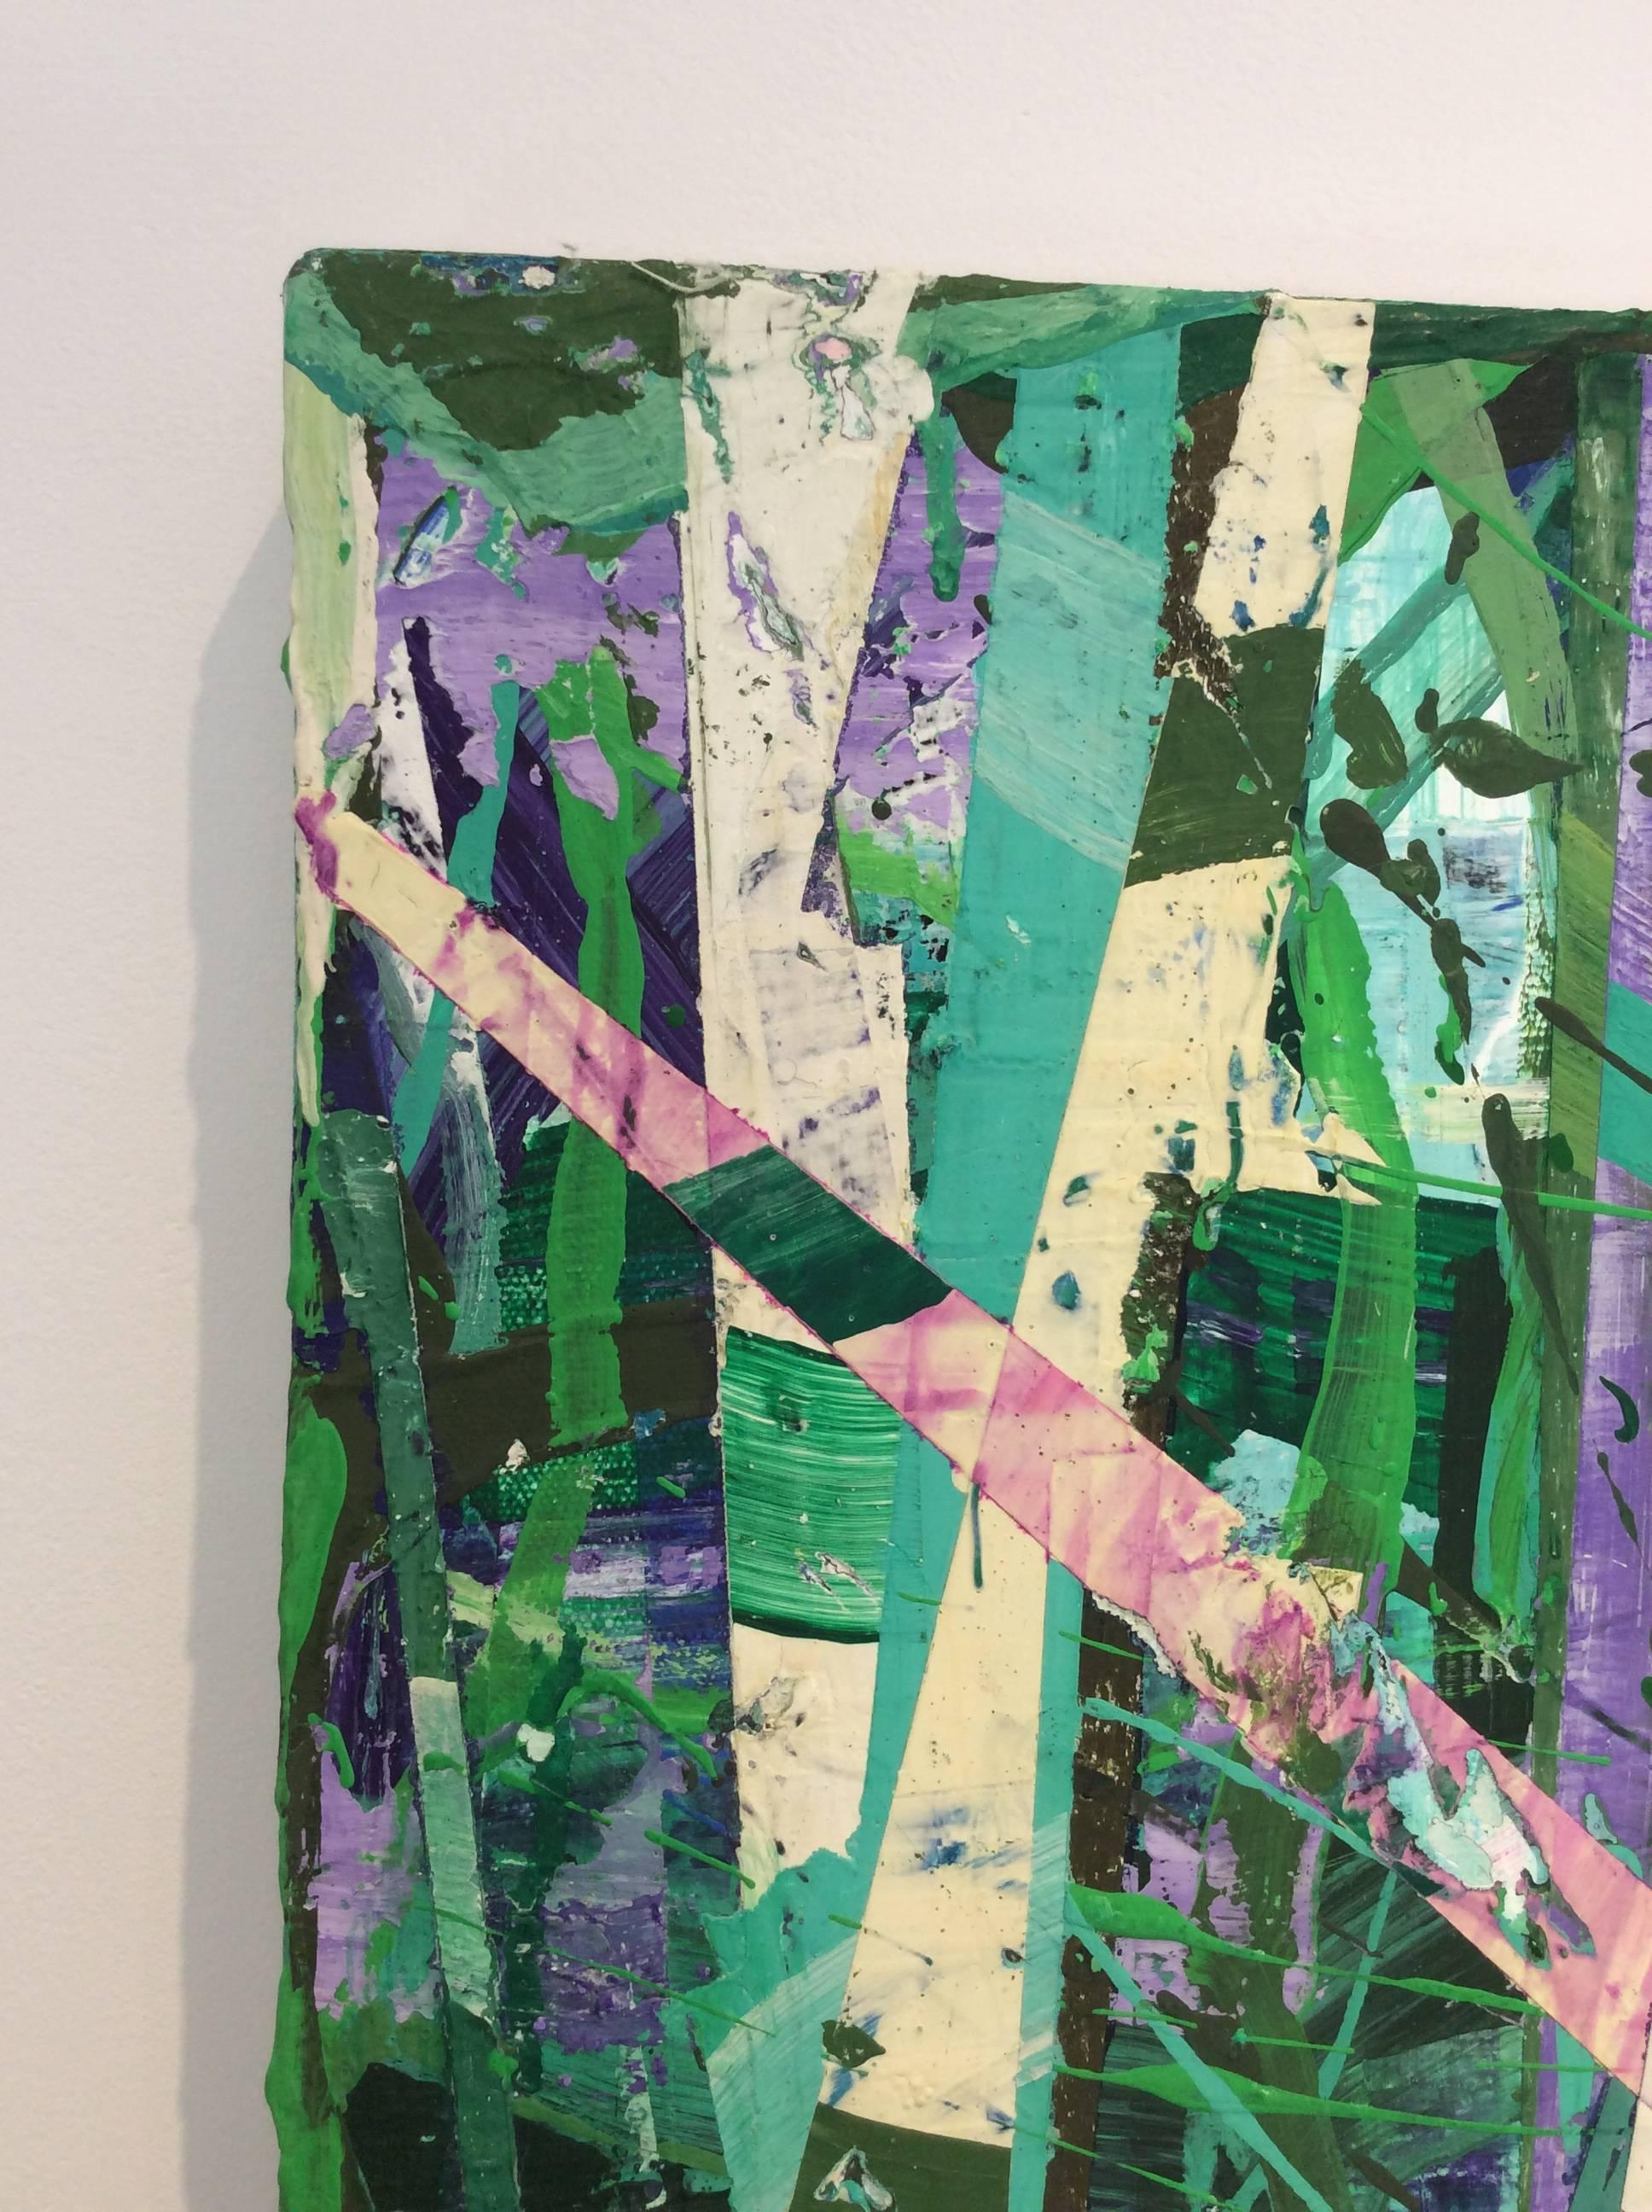 Taghkanic Creek, 14 mai (peinture abstraite moderne sur toile en vert et sarcelle) - Abstrait Mixed Media Art par Vincent Pomilio